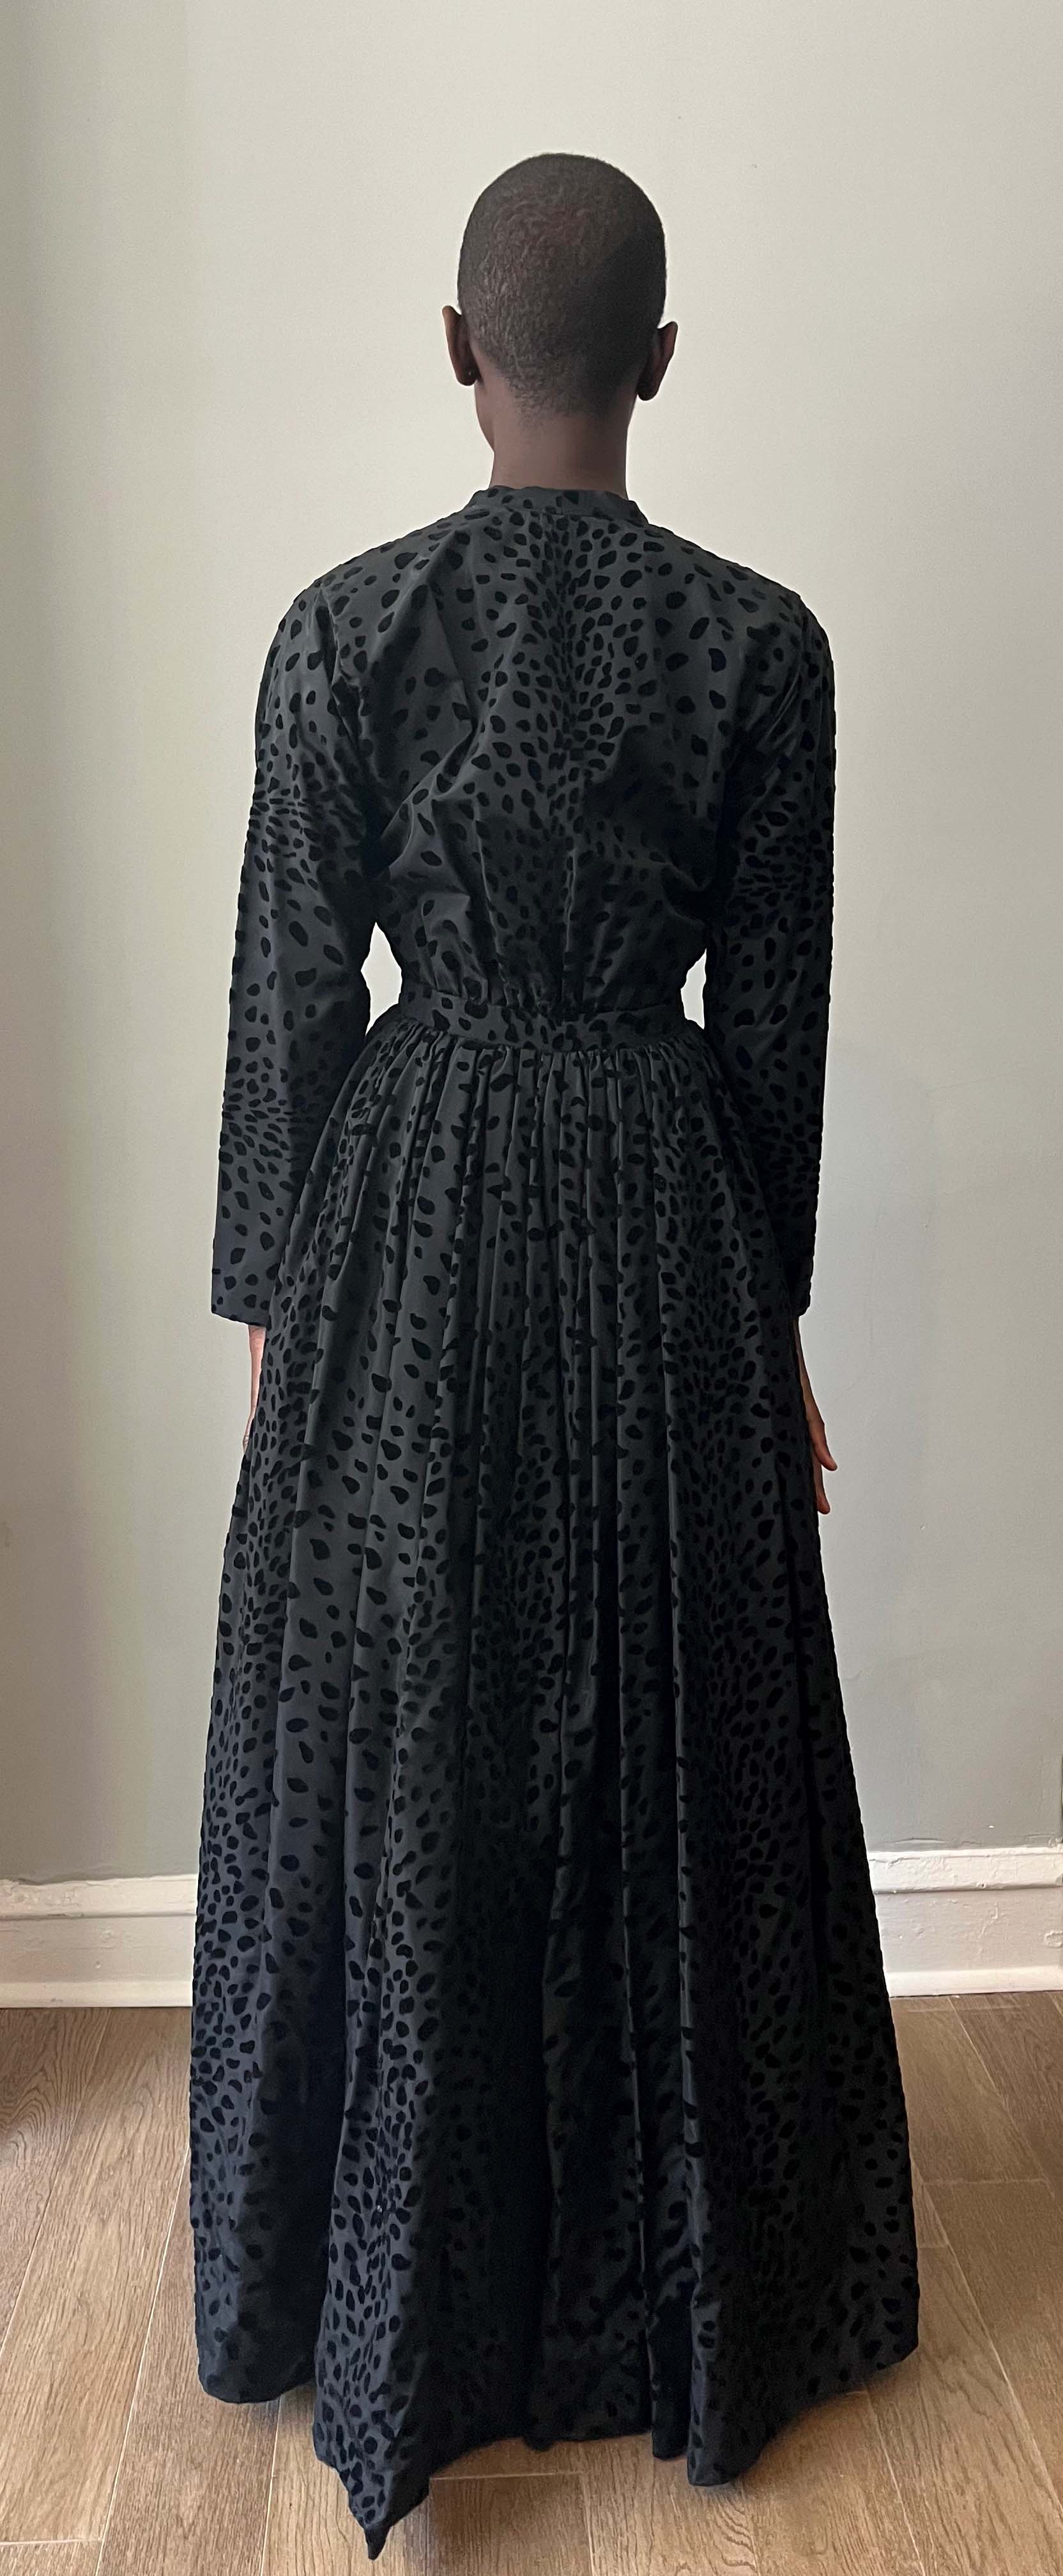 Attrib. Pauline Trigere black velvet flecked taffeta gown/duster